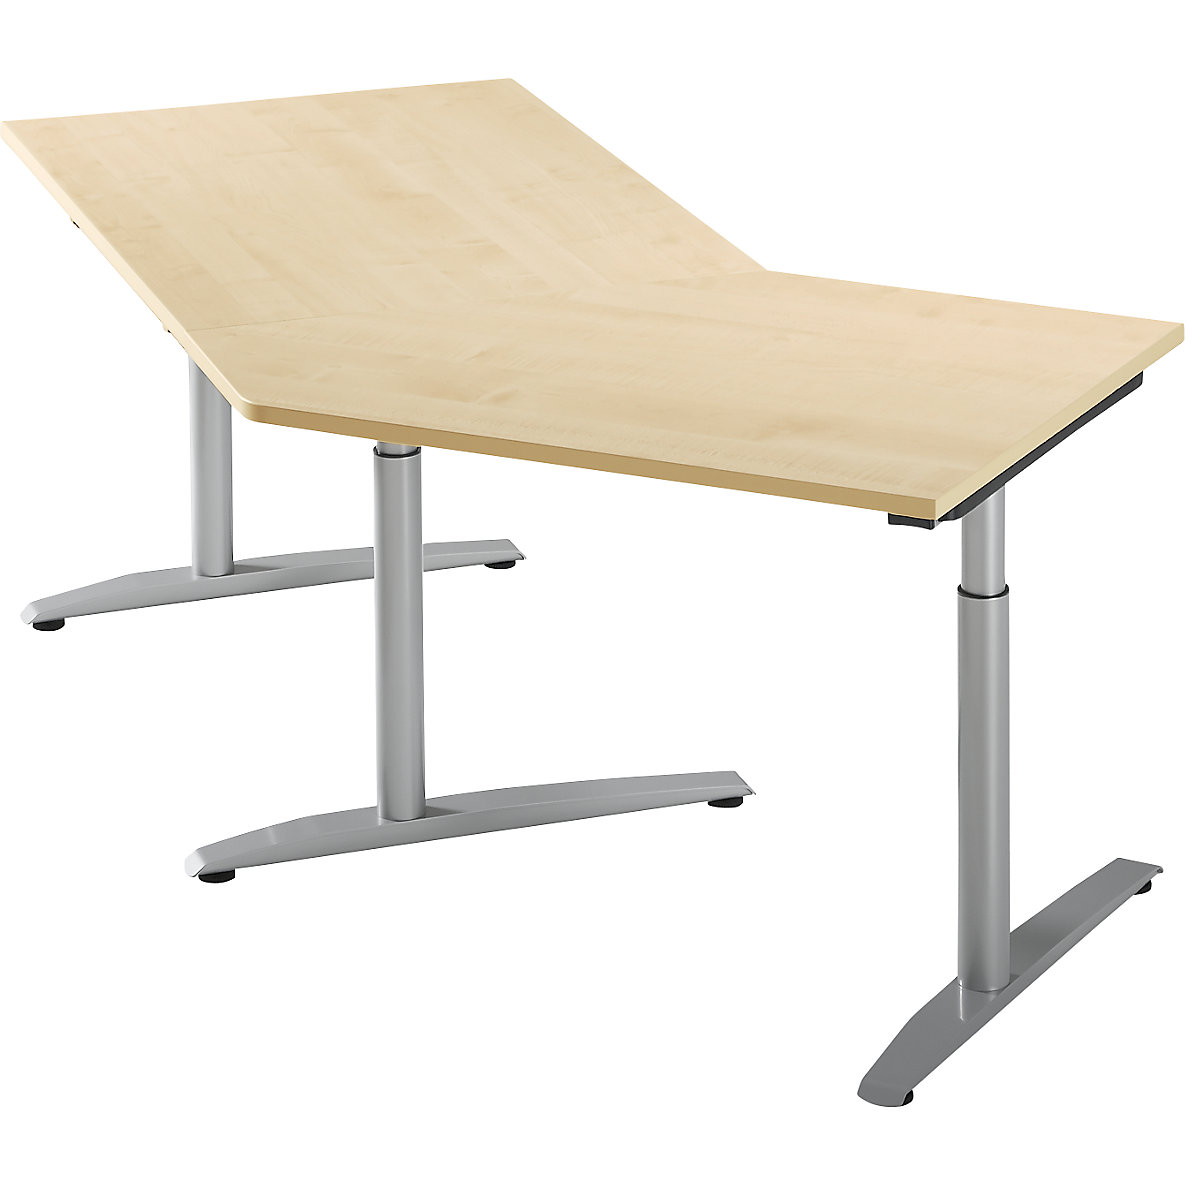 Table d'extension réglable en hauteur de 650 à 850 mm HANNA, 45° pour montage à droite, façon érable-5